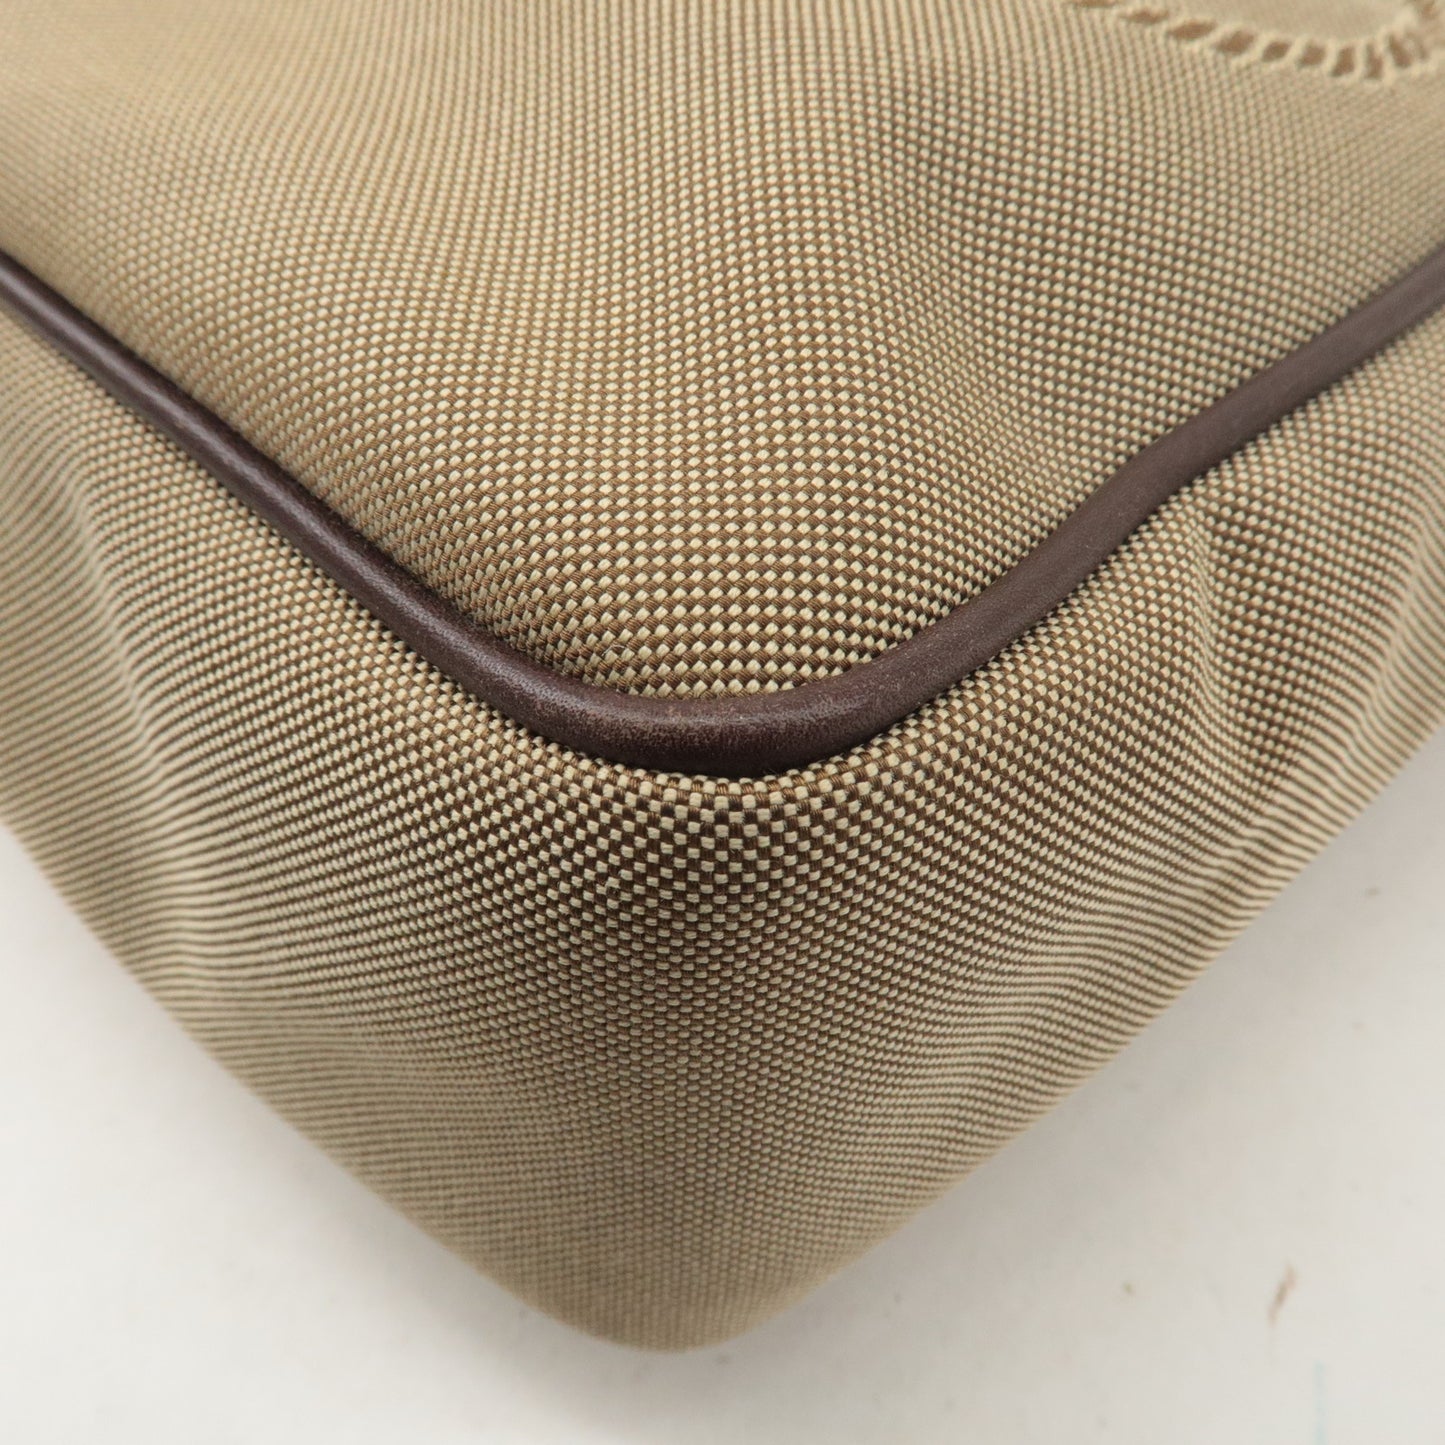 PRADA Logo Jacquard Leather Shoulder Bag Beige Brown VA0643